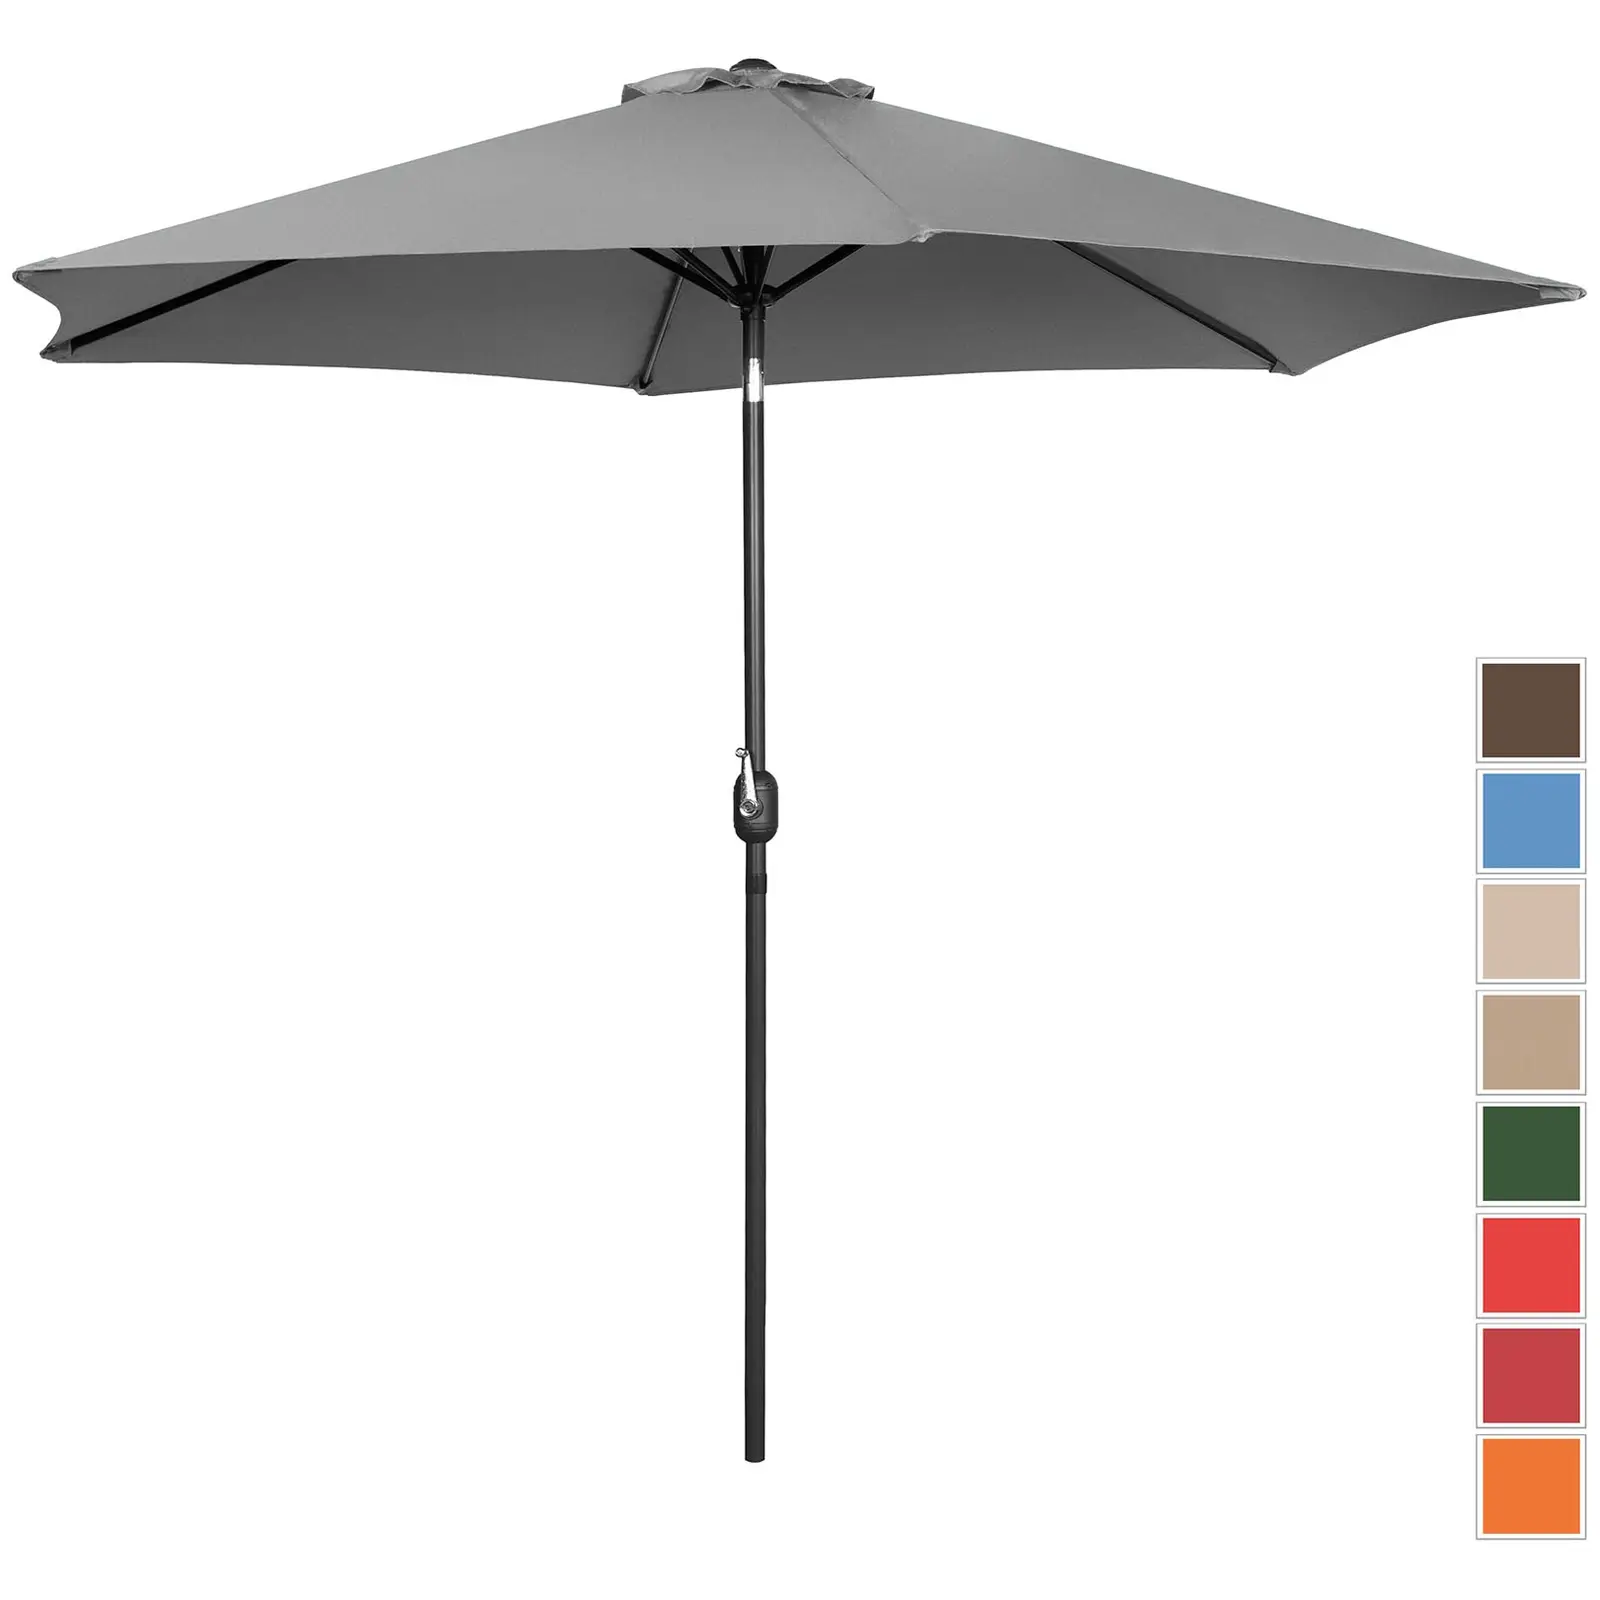 Μεγάλη ομπρέλα εξωτερικού χώρου - σκούρο γκρι - εξαγωνική - Ø 300 cm - ανακλινόμενη